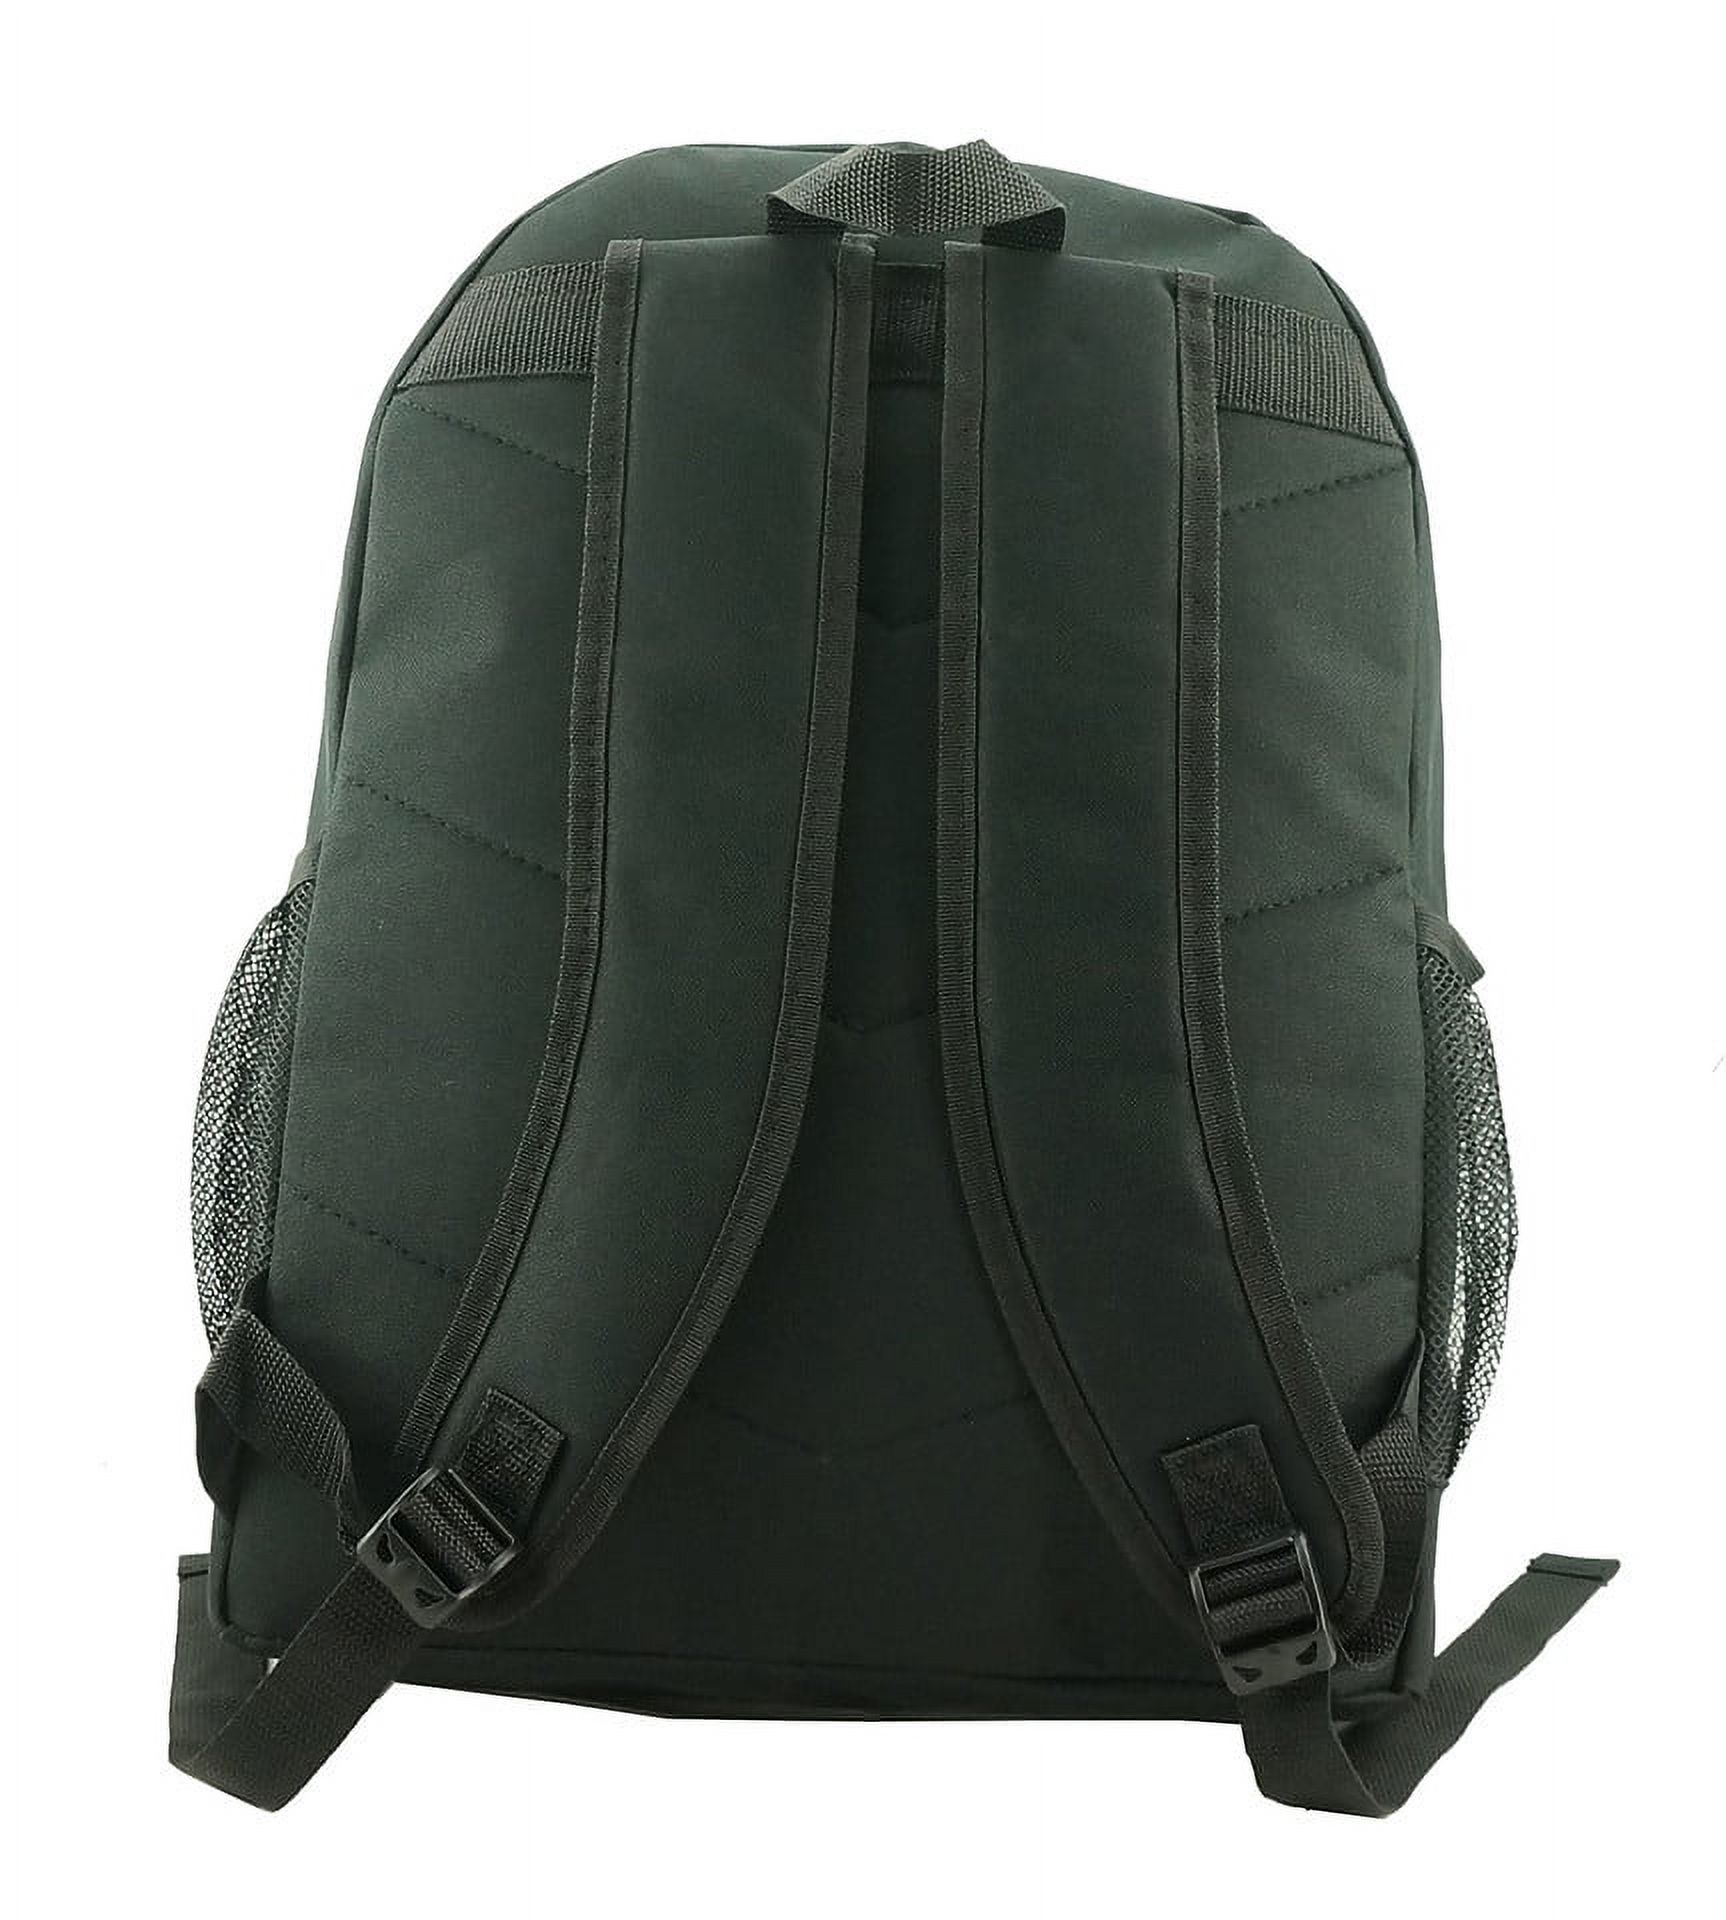 K-Cliffs Large Backpack for Kids-College Students , Lightweight Durable Travel Backpack Fits 15.6 Laptops Water Resistant, Unisex Adjustable Padded Shoulder Straps  (Black) - image 5 of 5